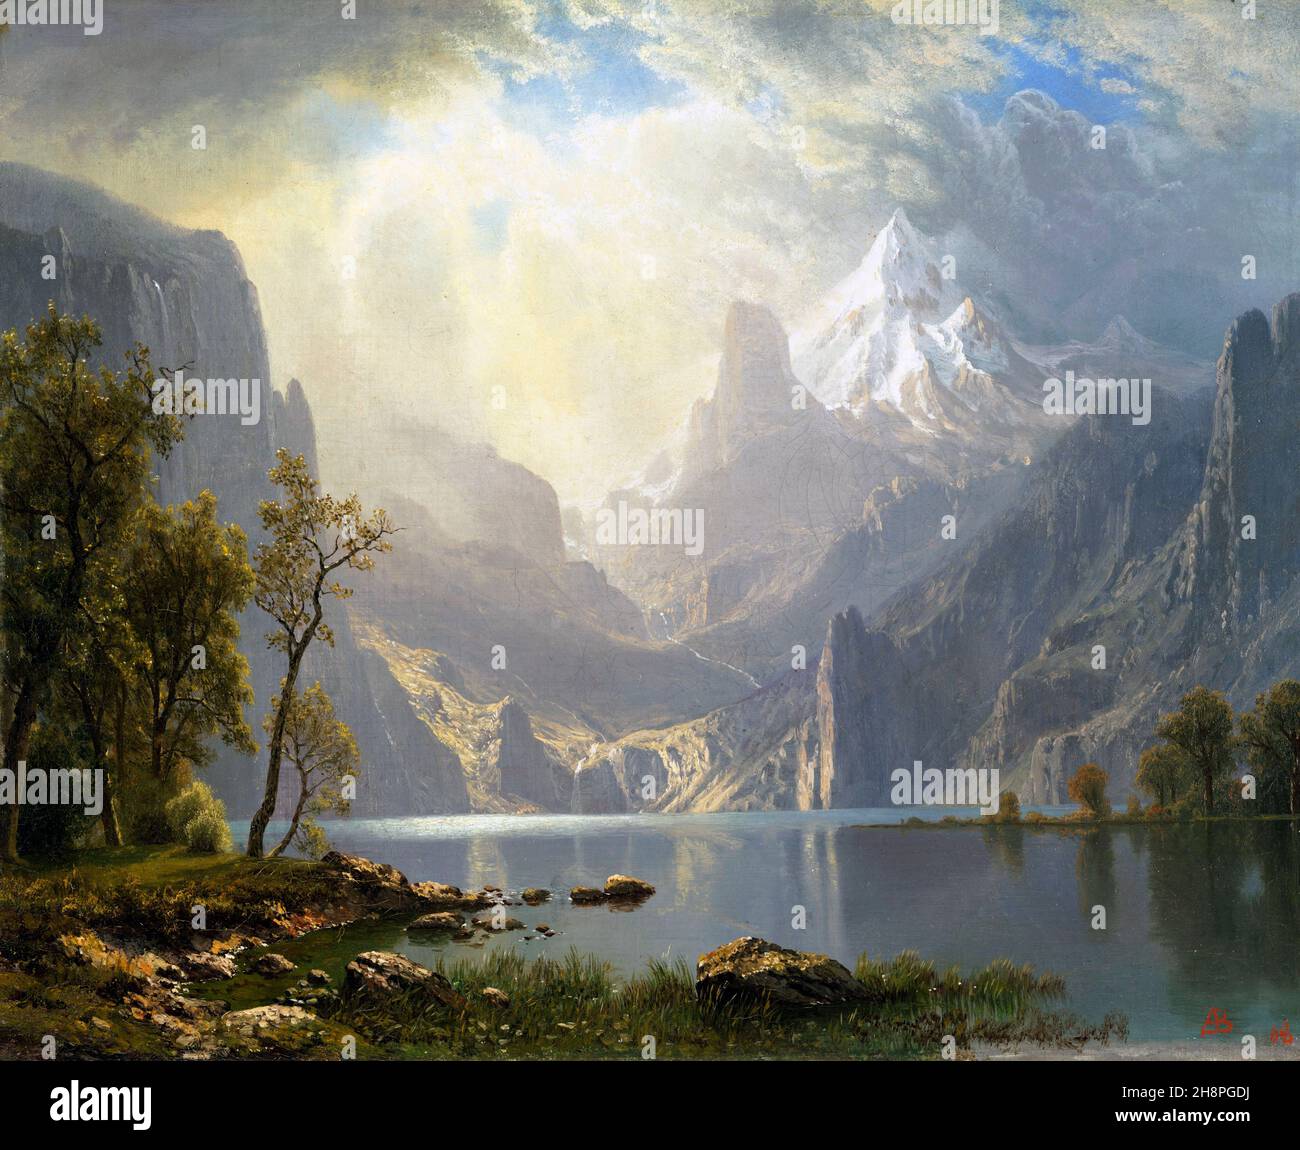 Dans les Sierras par Albert Bierstadt (1830-1902), huile sur toile, 1868 Banque D'Images